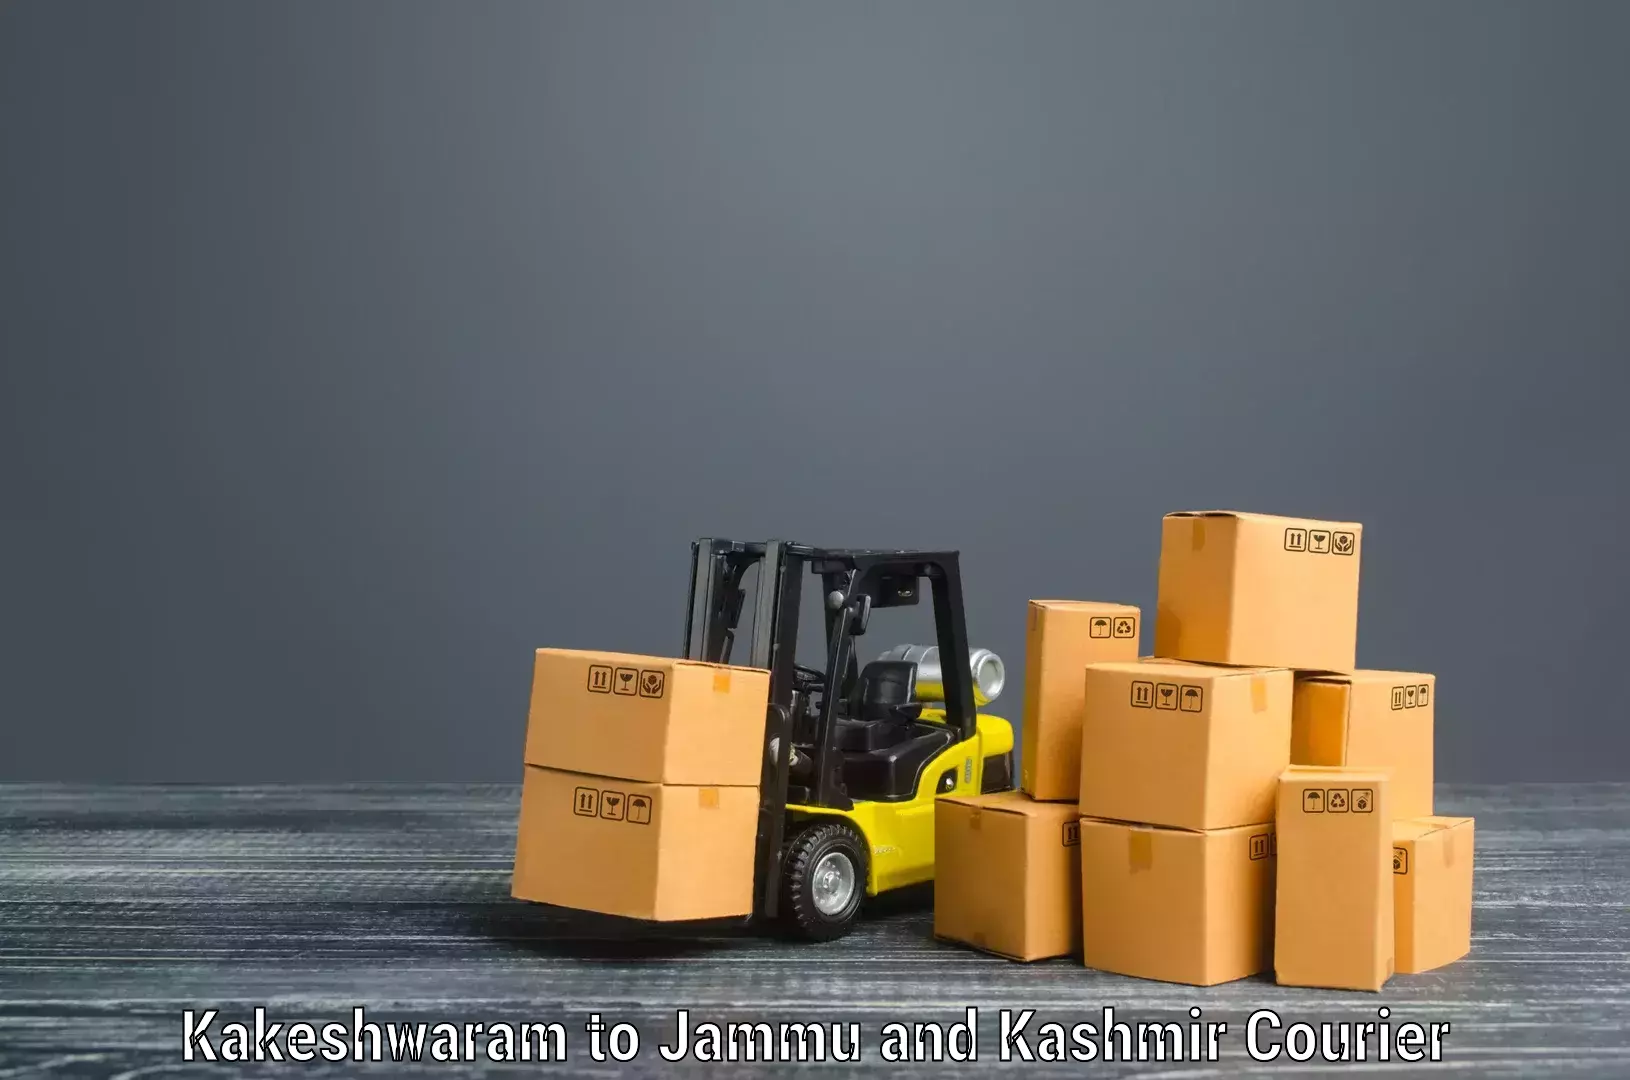 Furniture transport experts Kakeshwaram to Doda